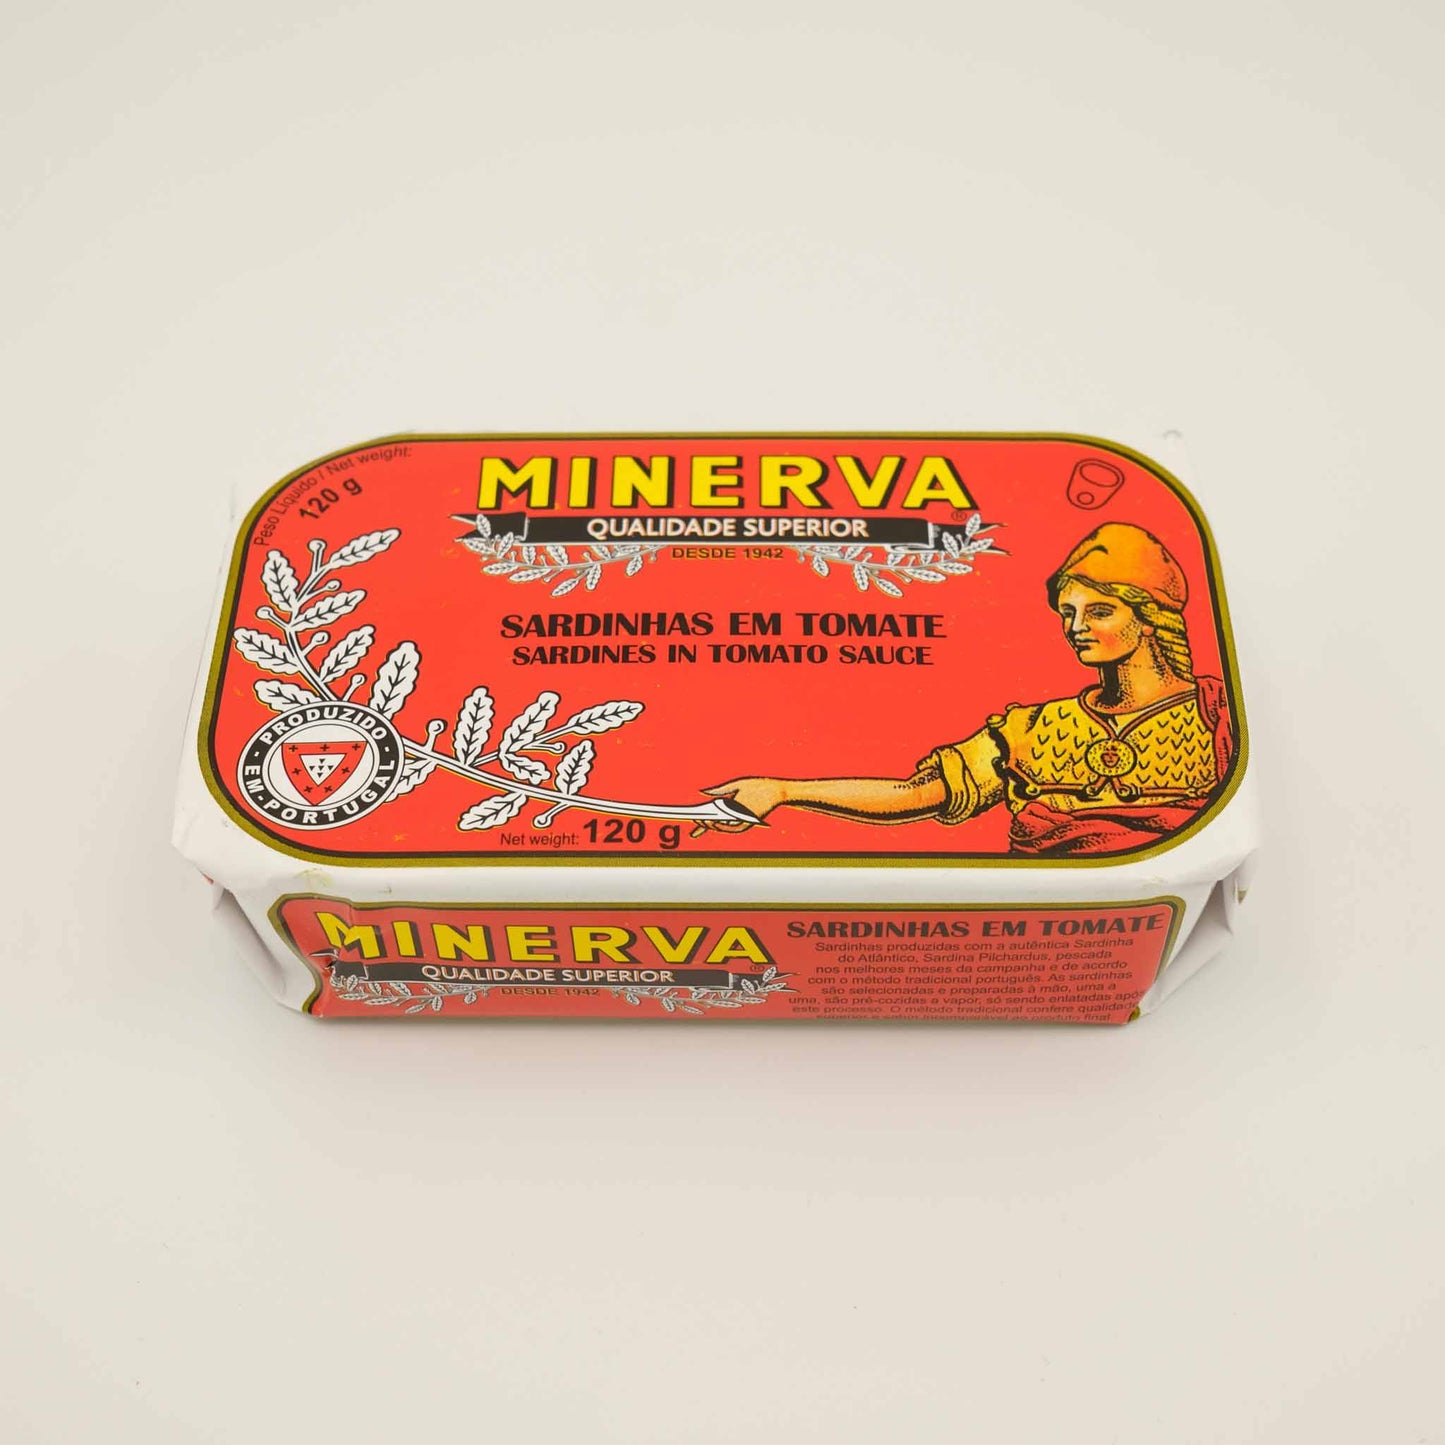 Minerva Sardines in Tomato Sauce